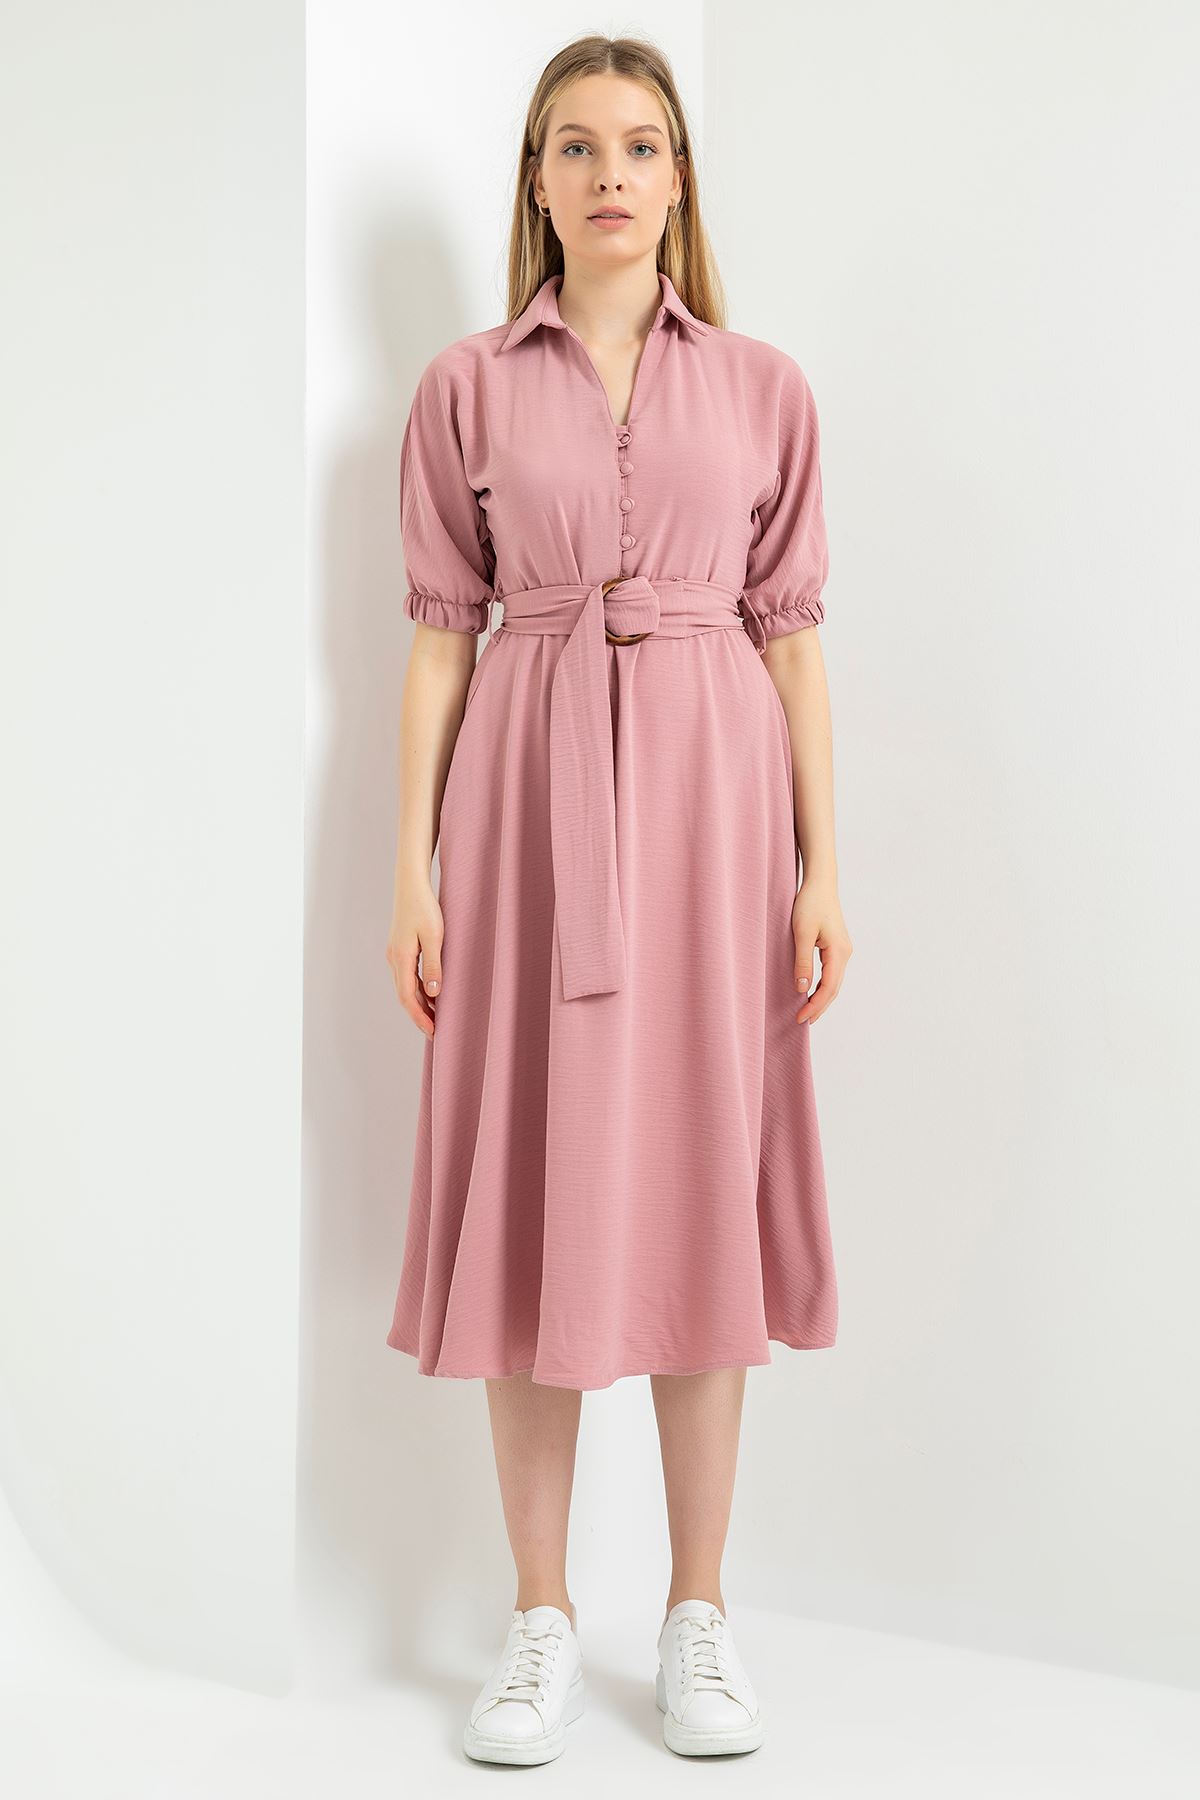 Linen Fabric Short Sleeve Shirt Collar Elastic Women Dress - Light Pink